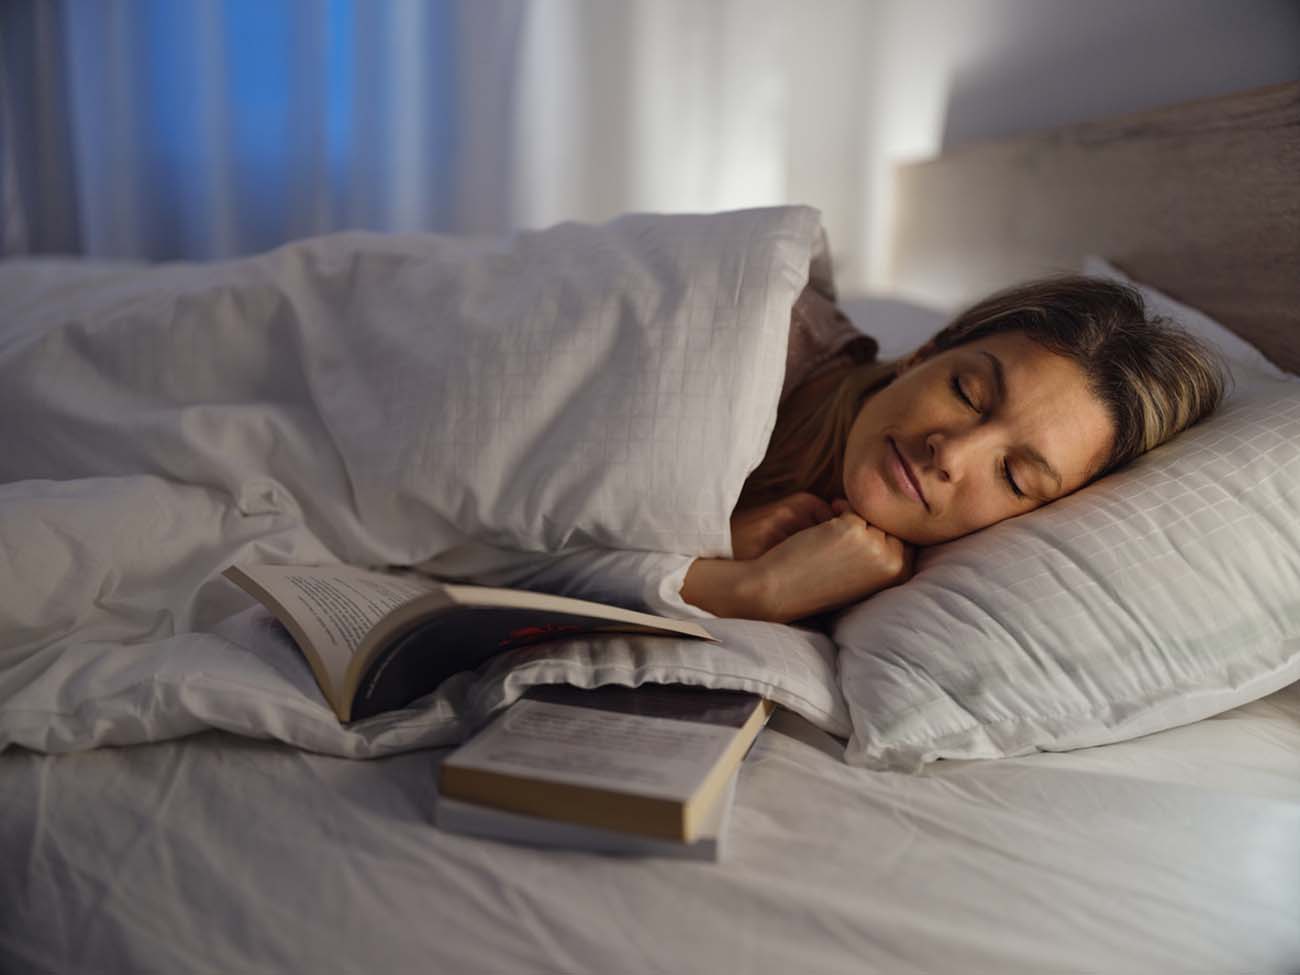 Παγκόσμια Ημέρα Ύπνου: Δύο επιδημίες που σχετίζονται με τον ύπνο και δεν πρέπει να αγνοούμε